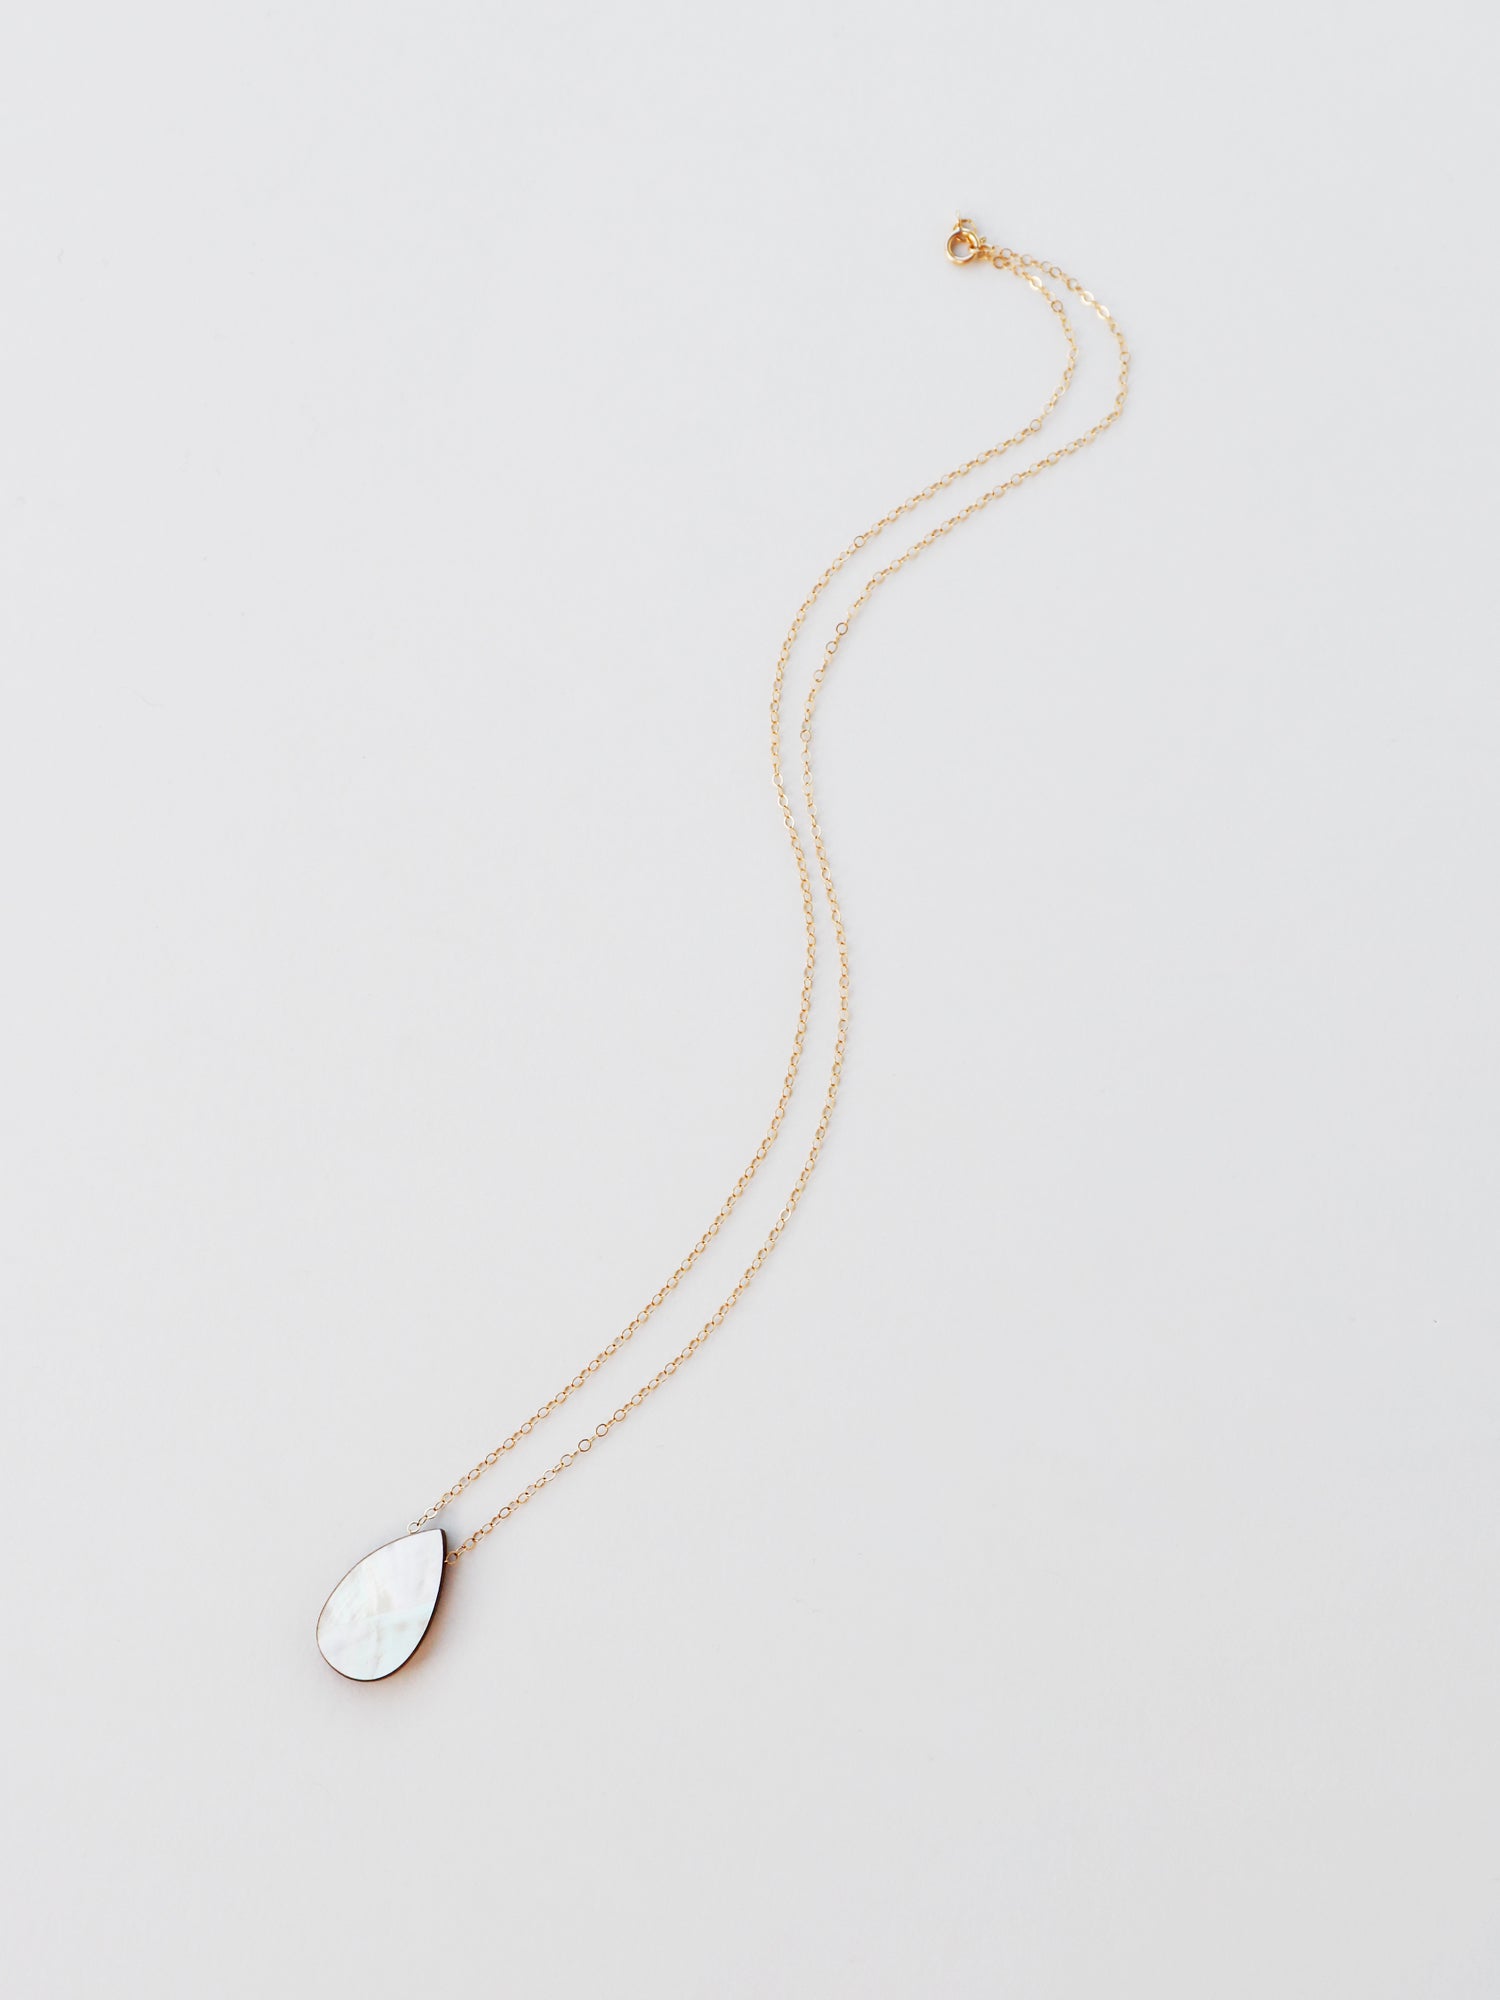 Raindrop Necklace in Cream